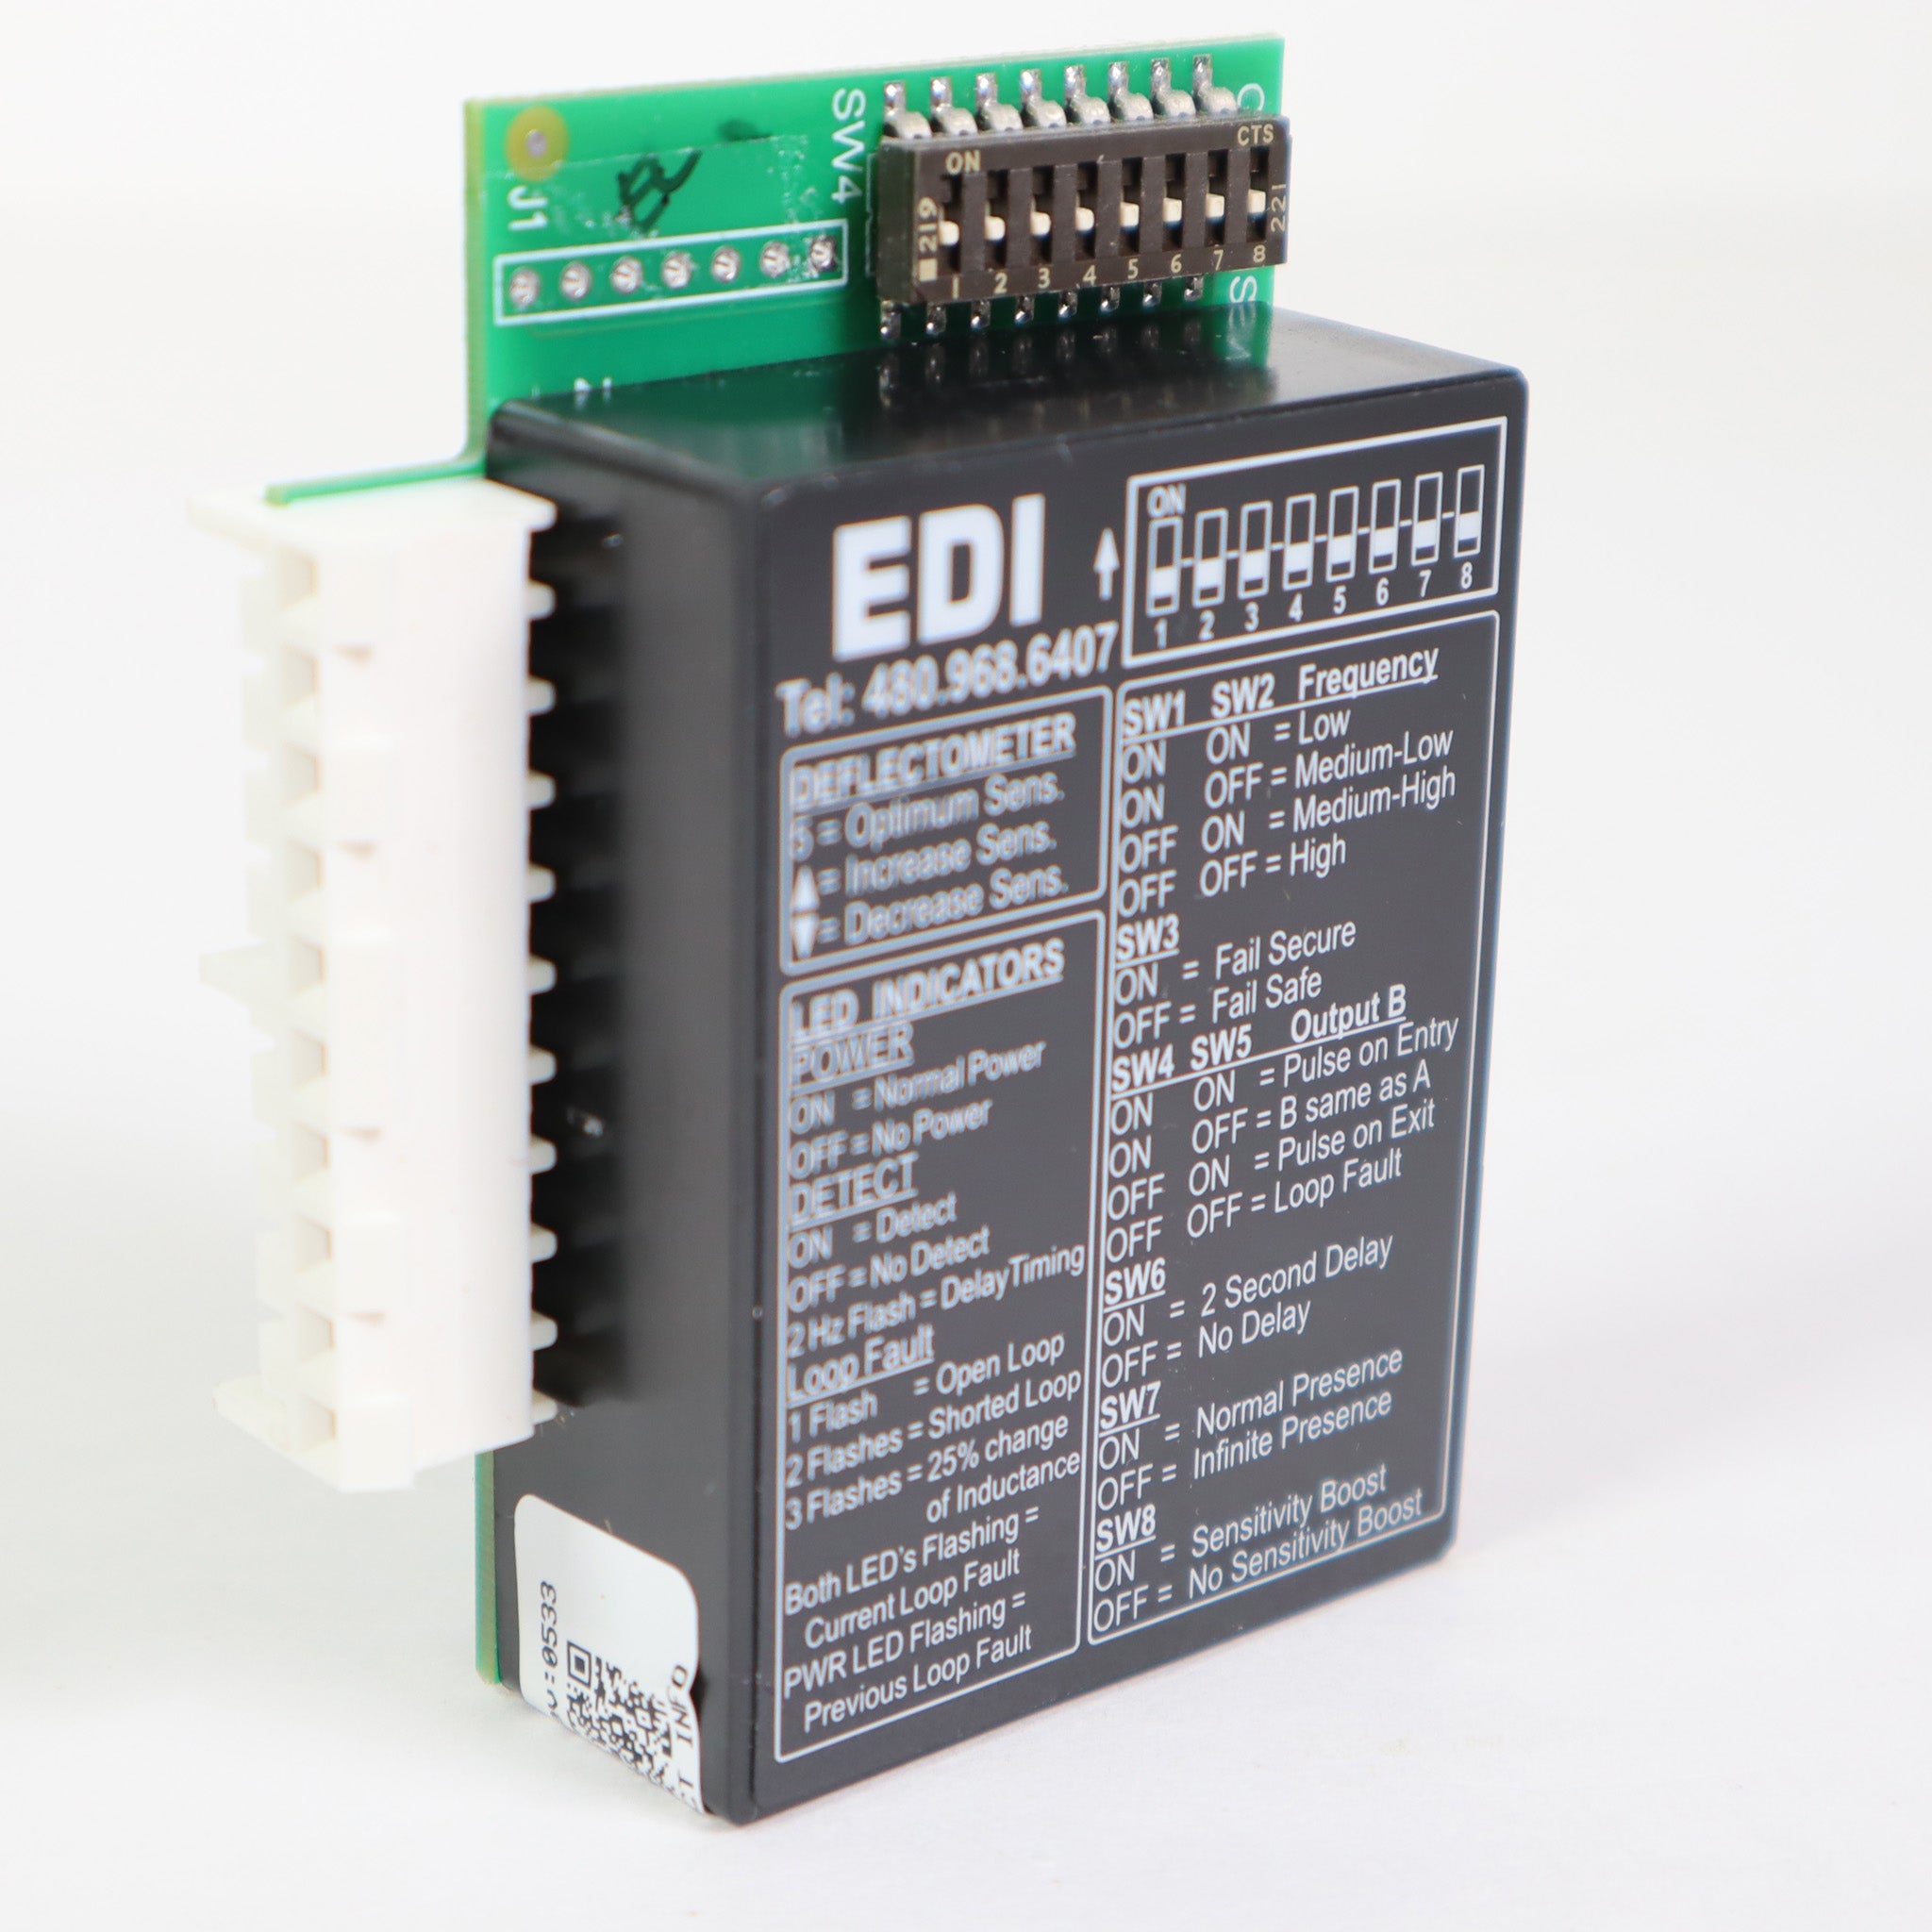 EDI LMA-1800 Loop Detector